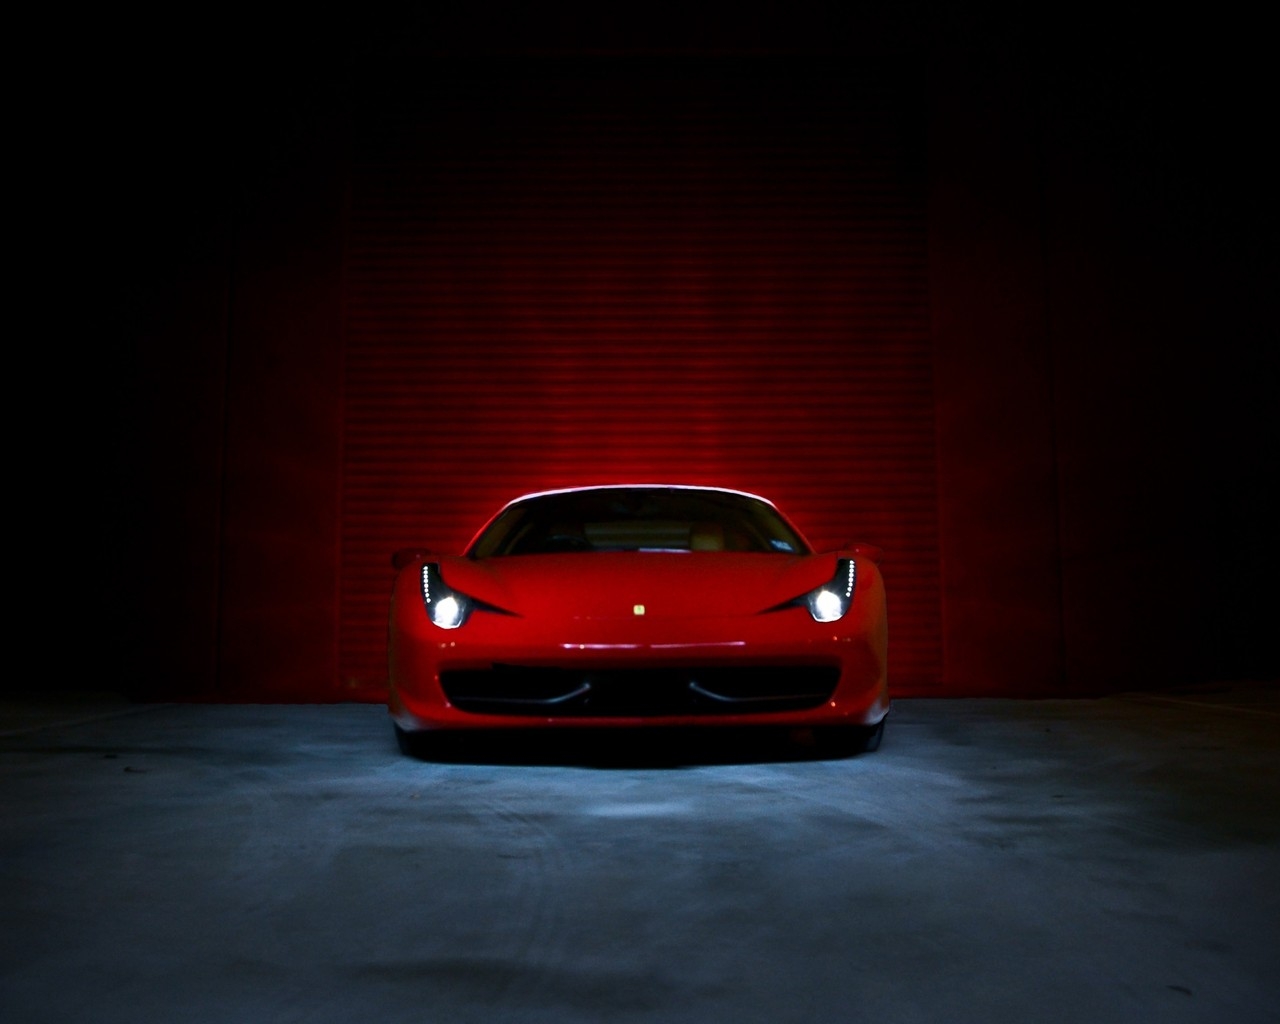 Ferrari 458 Italia Red  for 1280 x 1024 resolution